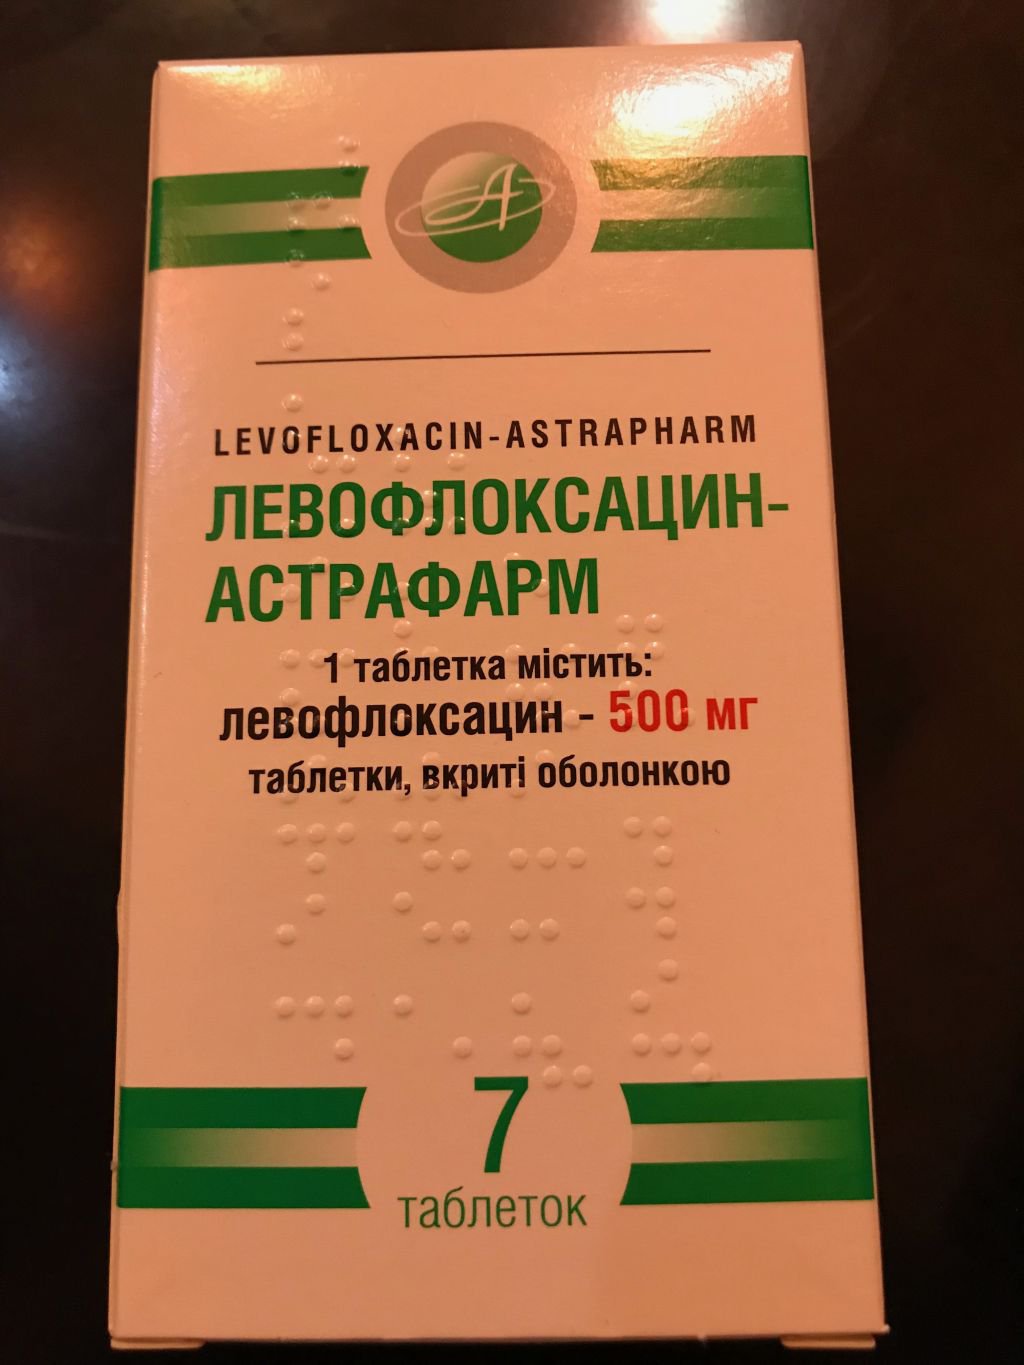 590 ГАТИЛИН - Gatifloxacin